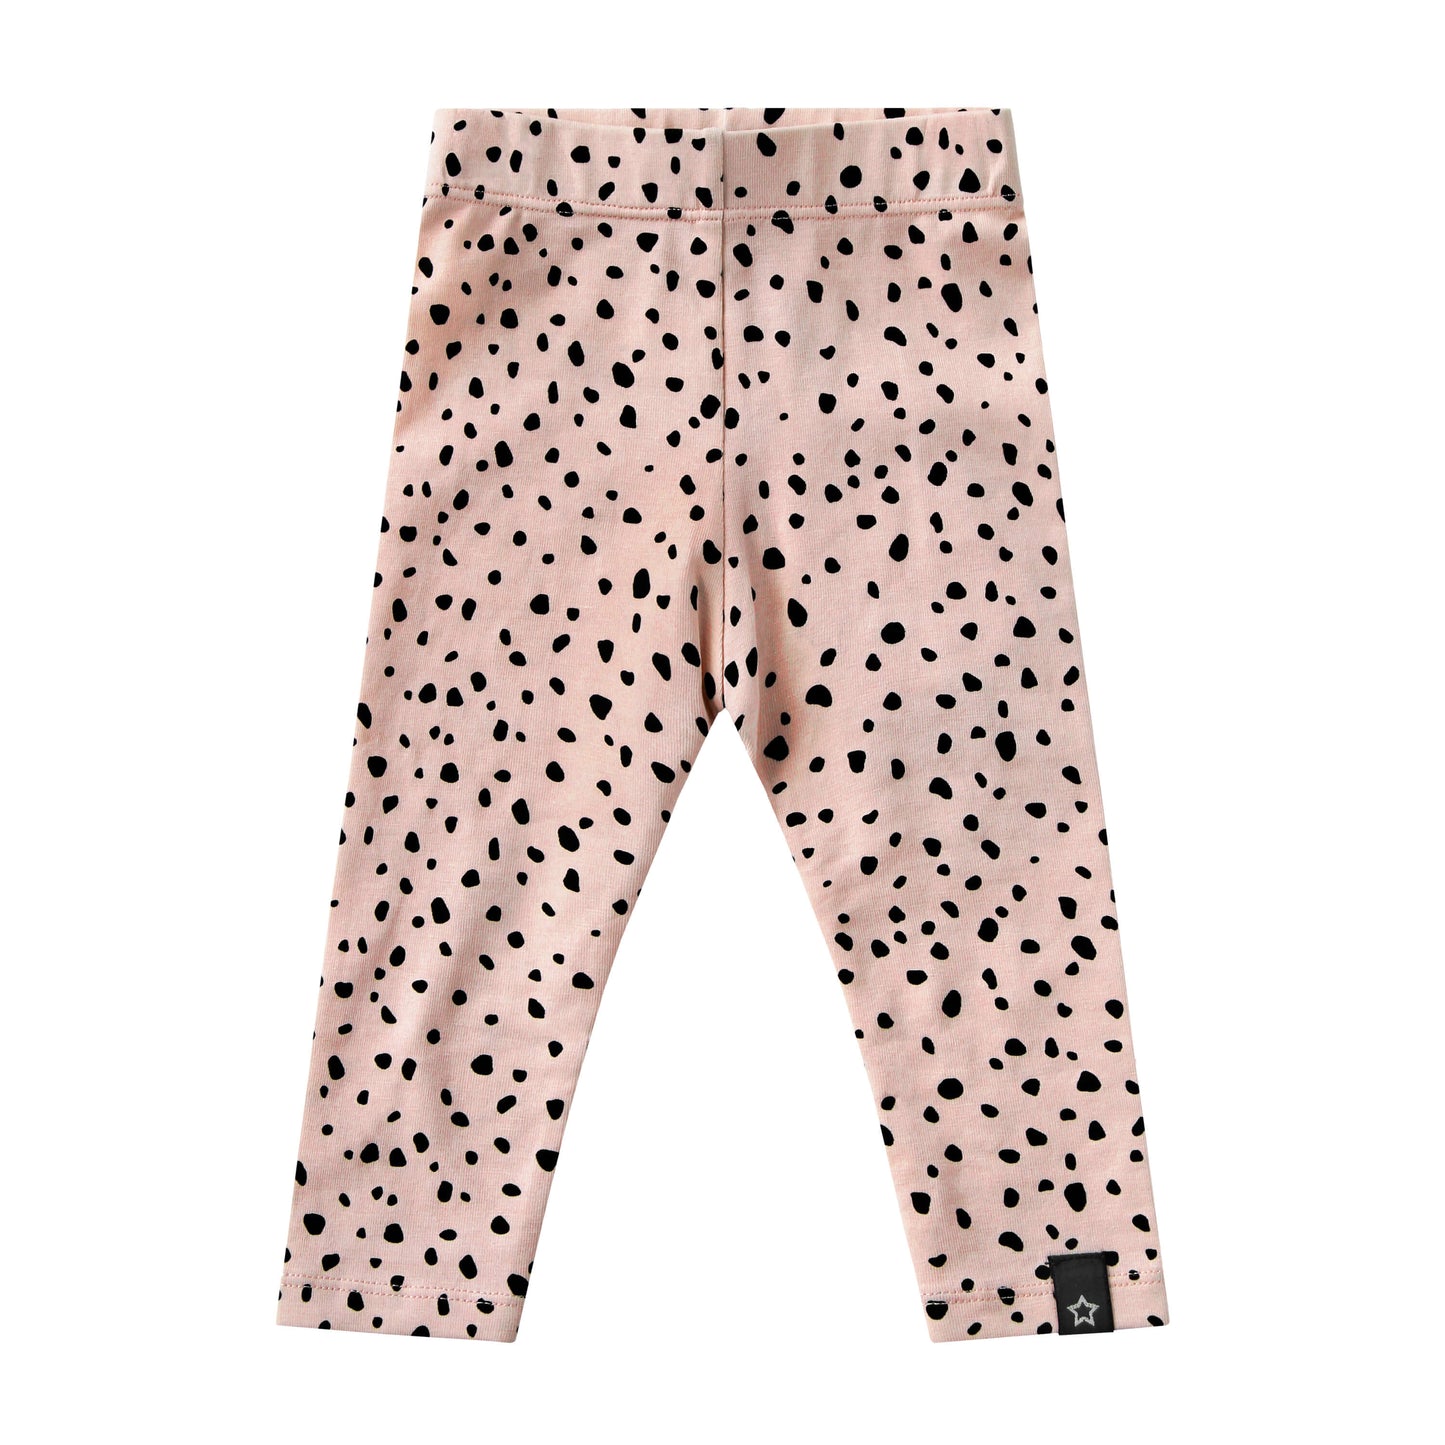 Your Wishes Legging Pink Cheetah - Baby Legging - Roze1